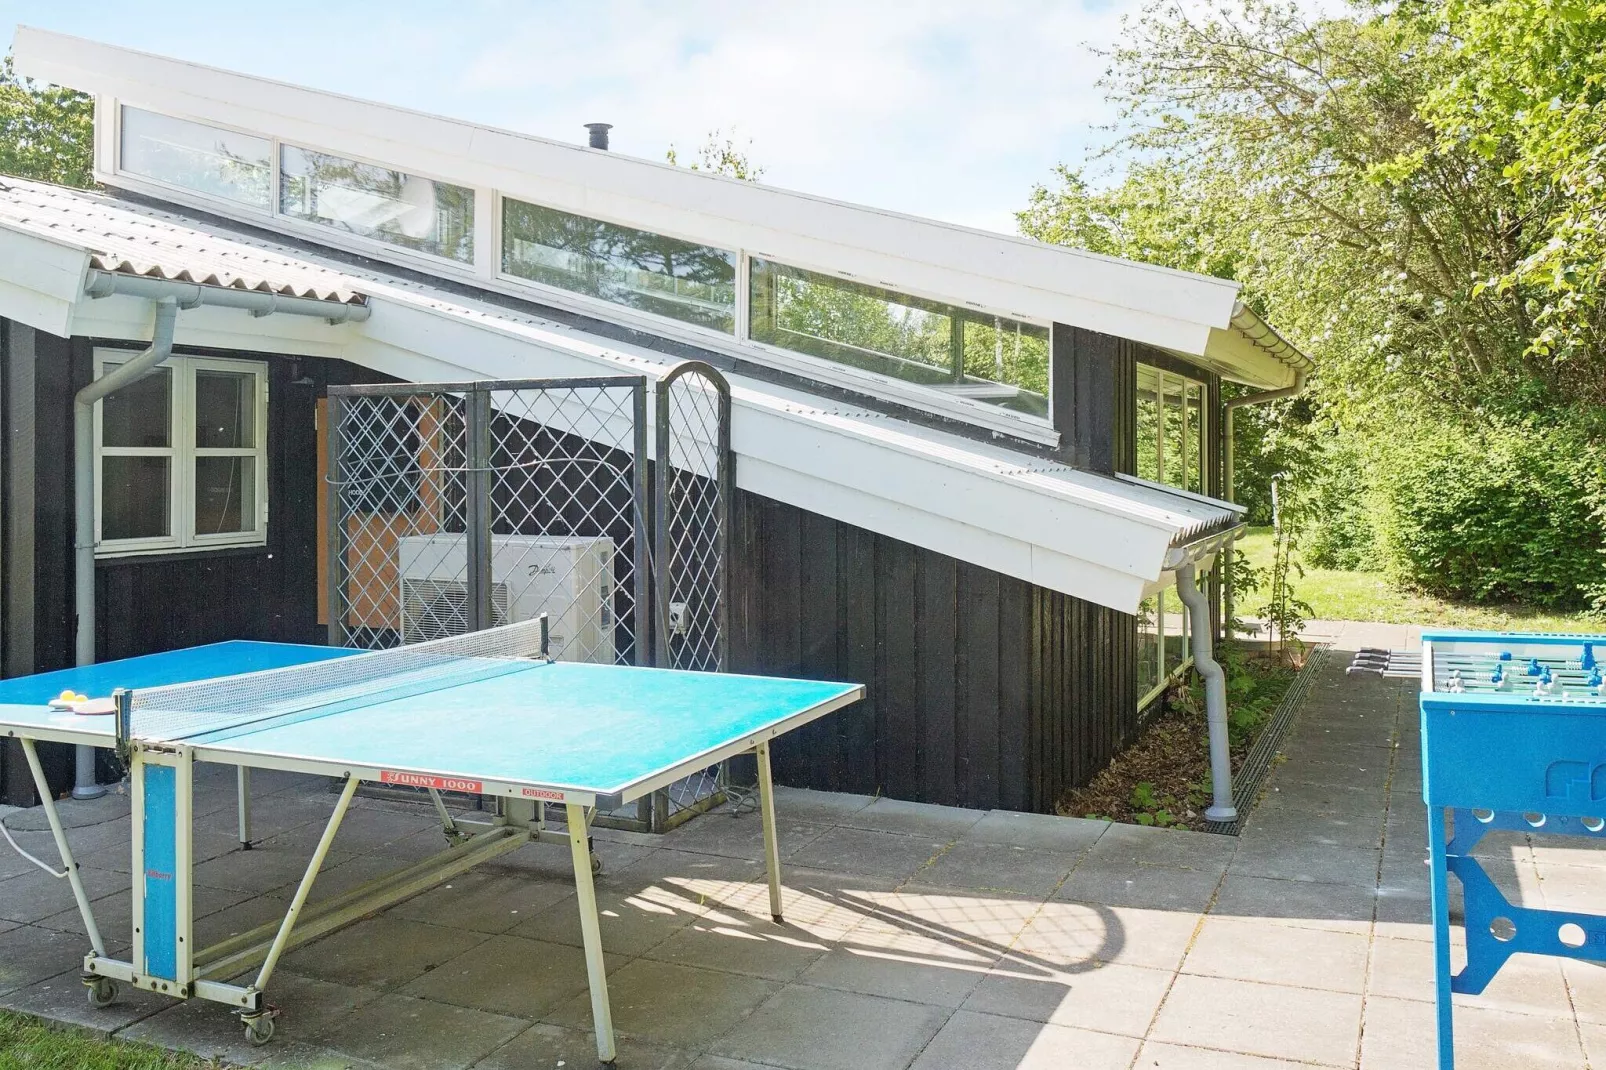 4-sterren vakantiehuis in Graested met binnenzwembad-Uitzicht